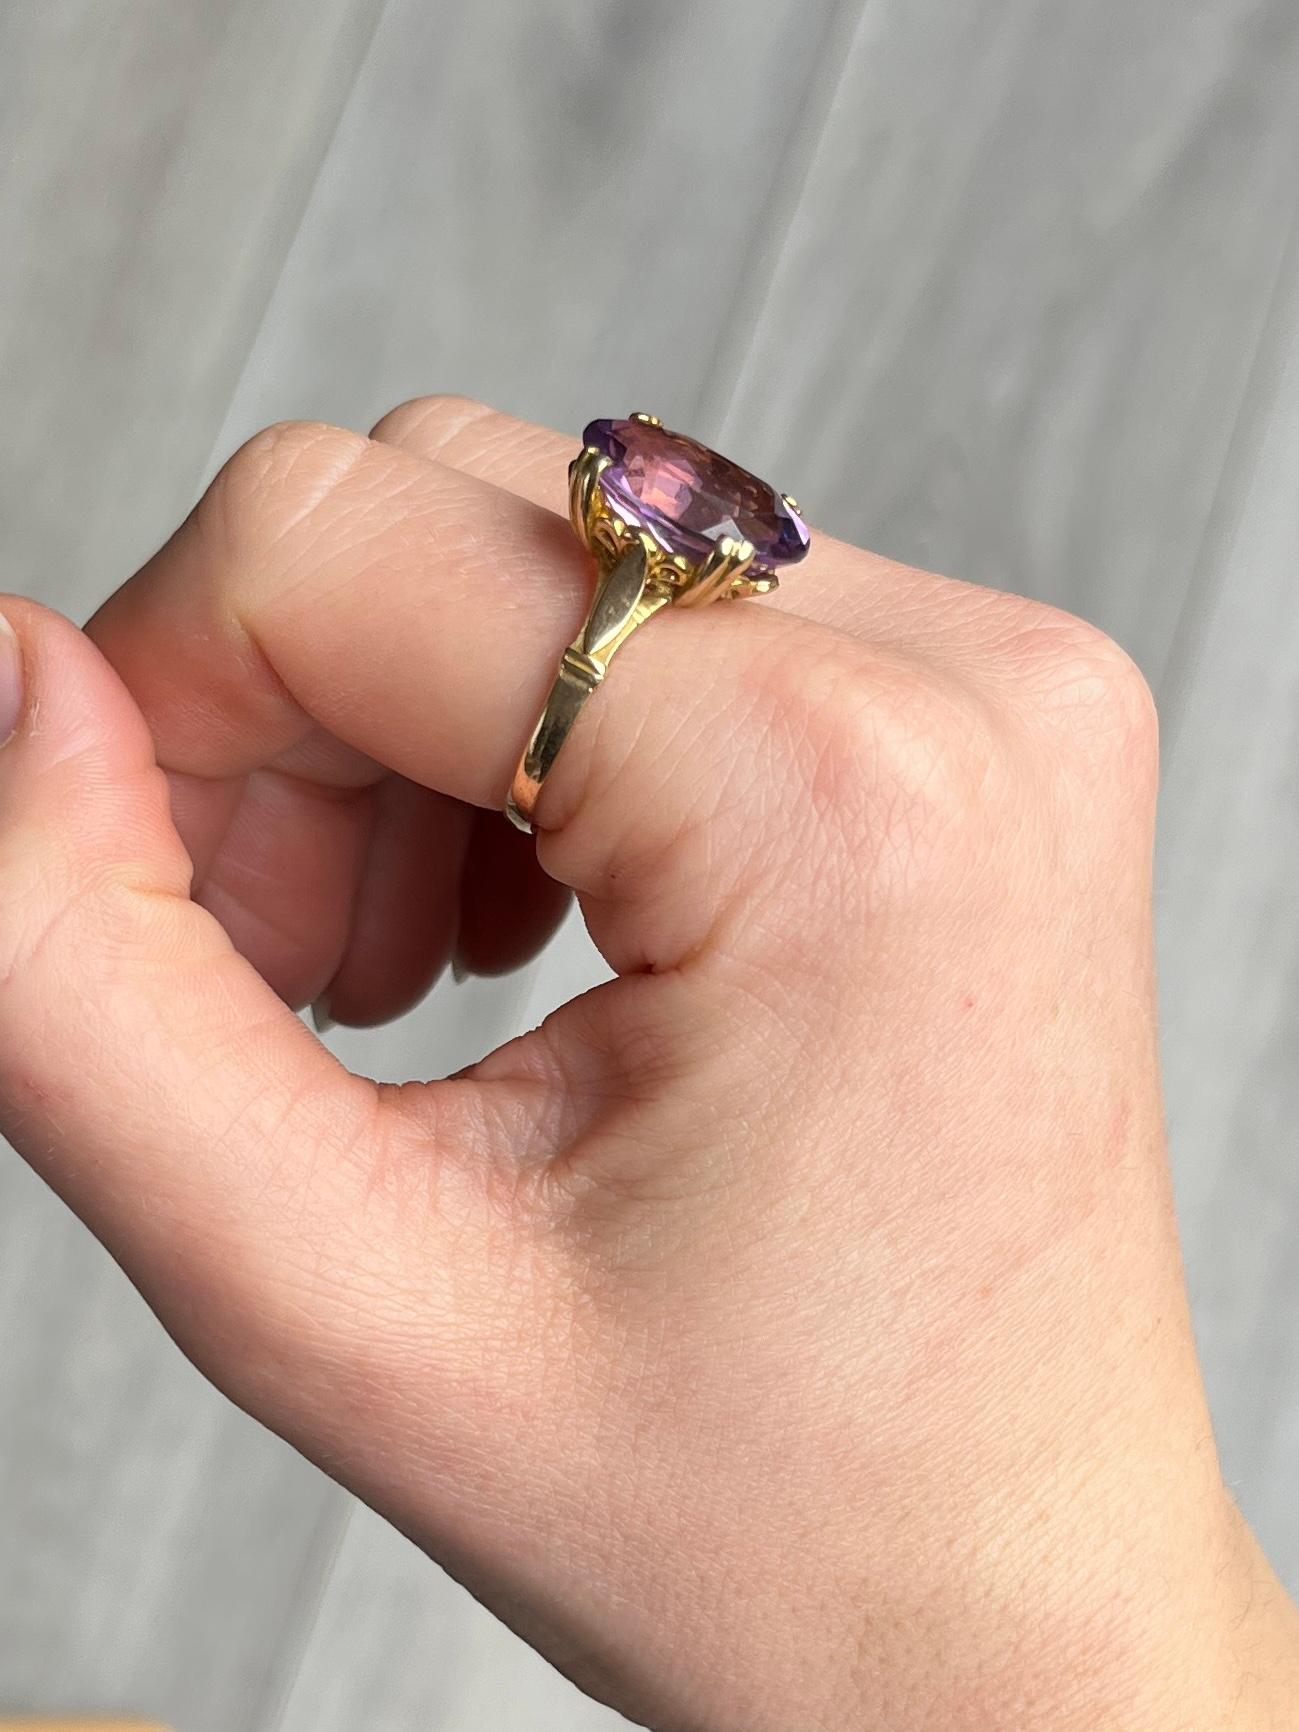 Der Amethyst auf diesem Ring ist ein wunderschöner violetter Stein, der in einfachen Doppelkrallen gehalten wird. Das Modell ist aus 9-karätigem Gold und hat eine offene Arbeitsgalerie. Vollständig gestempelt London 1968.

Ringgröße: Q oder 8
Stein